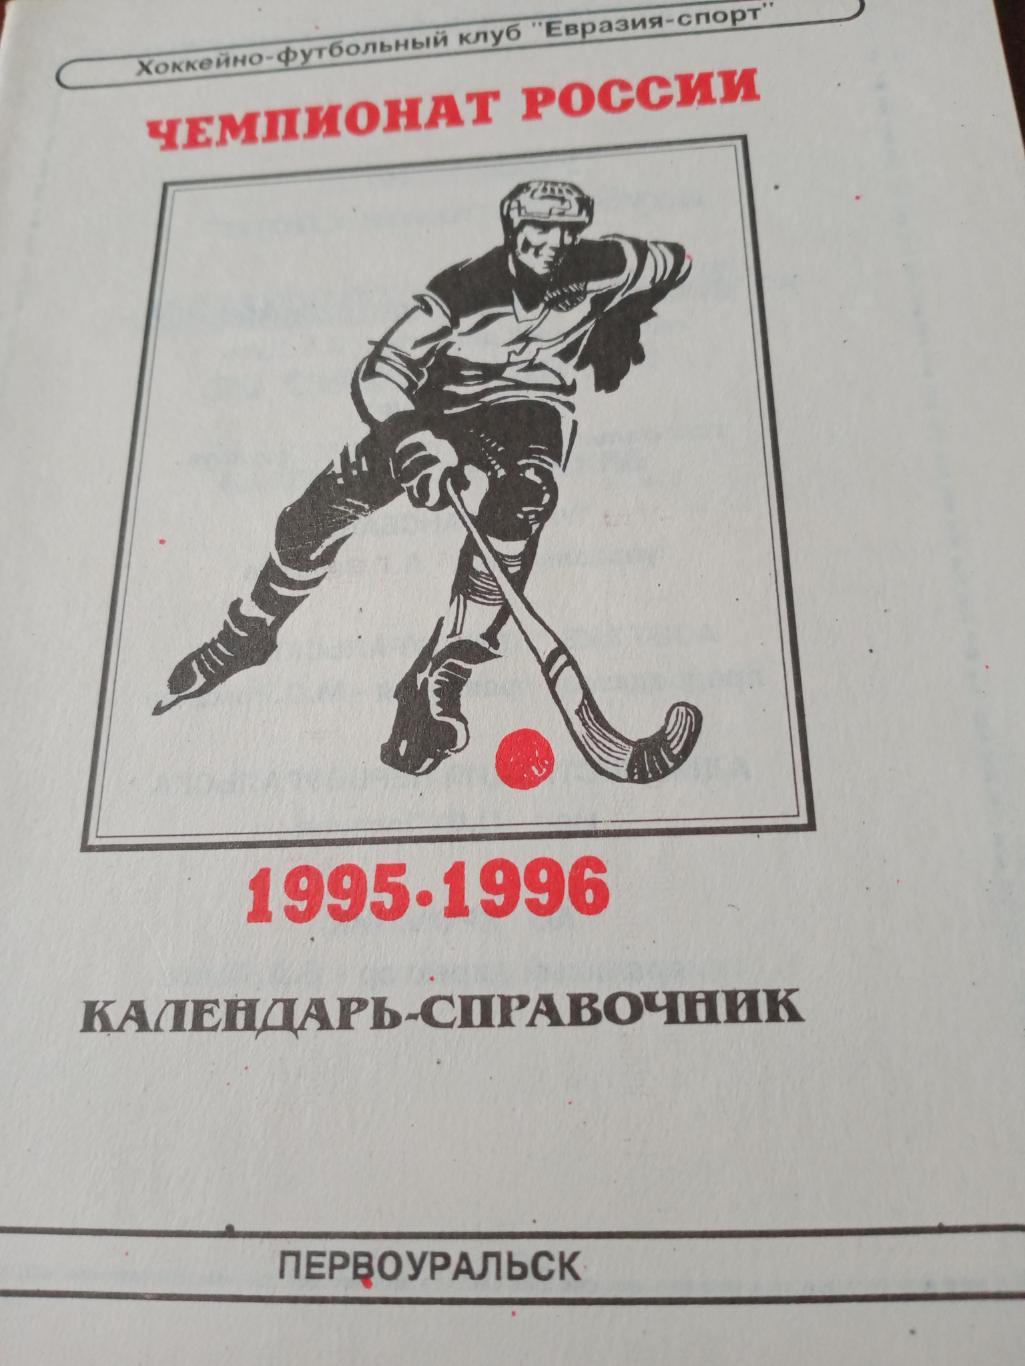 Хоккей с мячом. Первоуральск - 1995/96